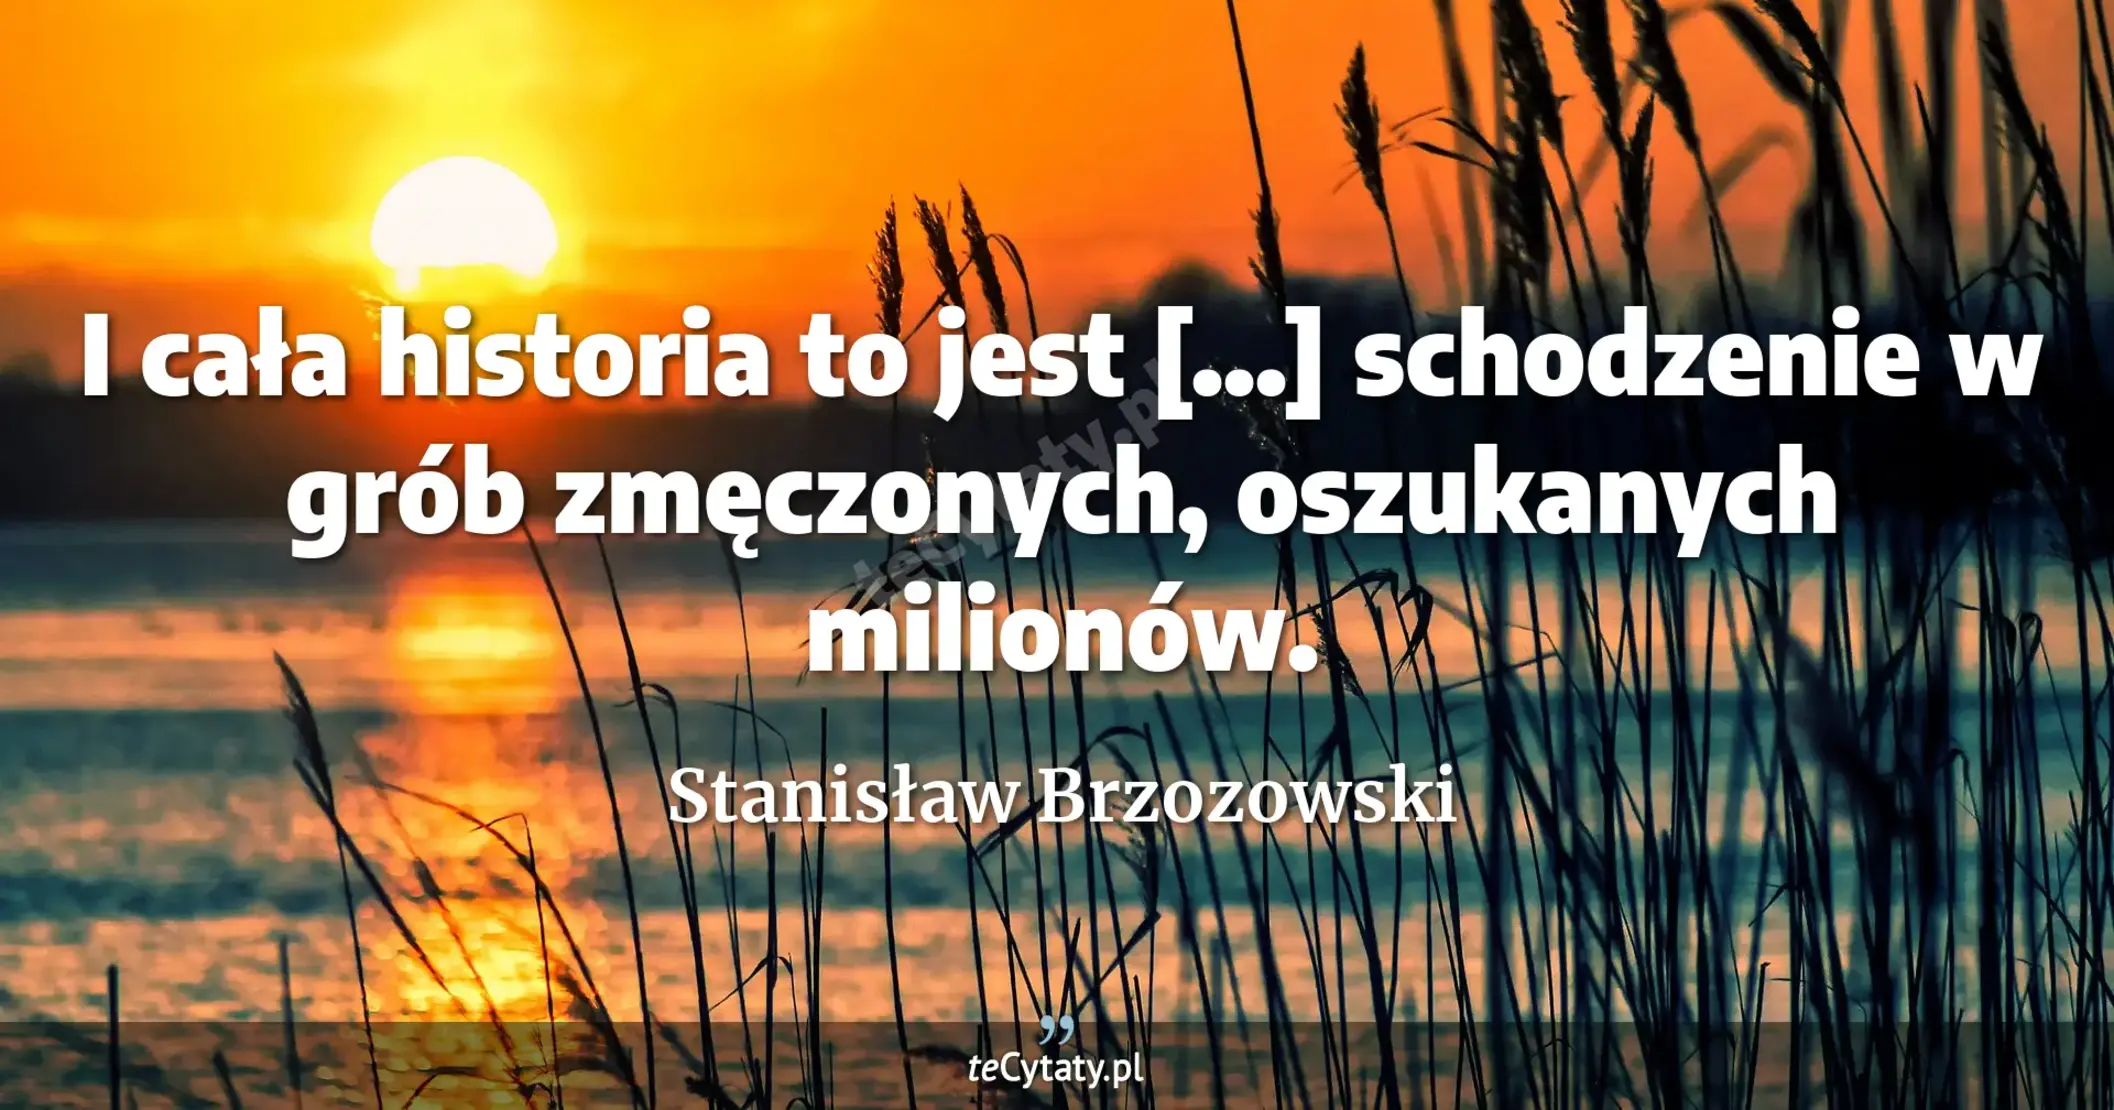 I cała historia to jest [...] schodzenie w grób zmęczonych, oszukanych milionów. - Stanisław Brzozowski